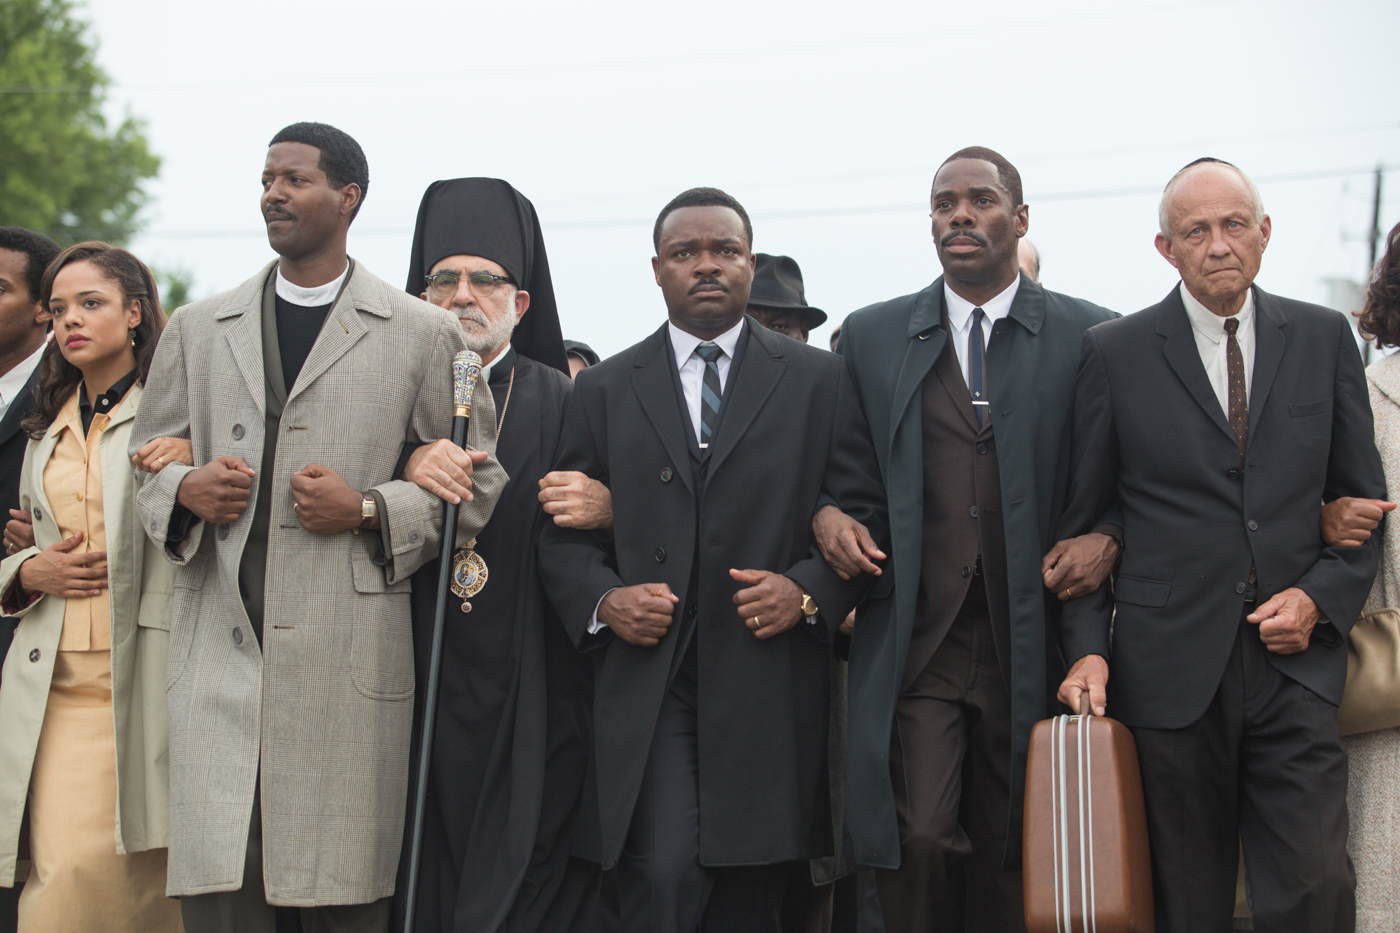 MOVIE REVIEW: Selma